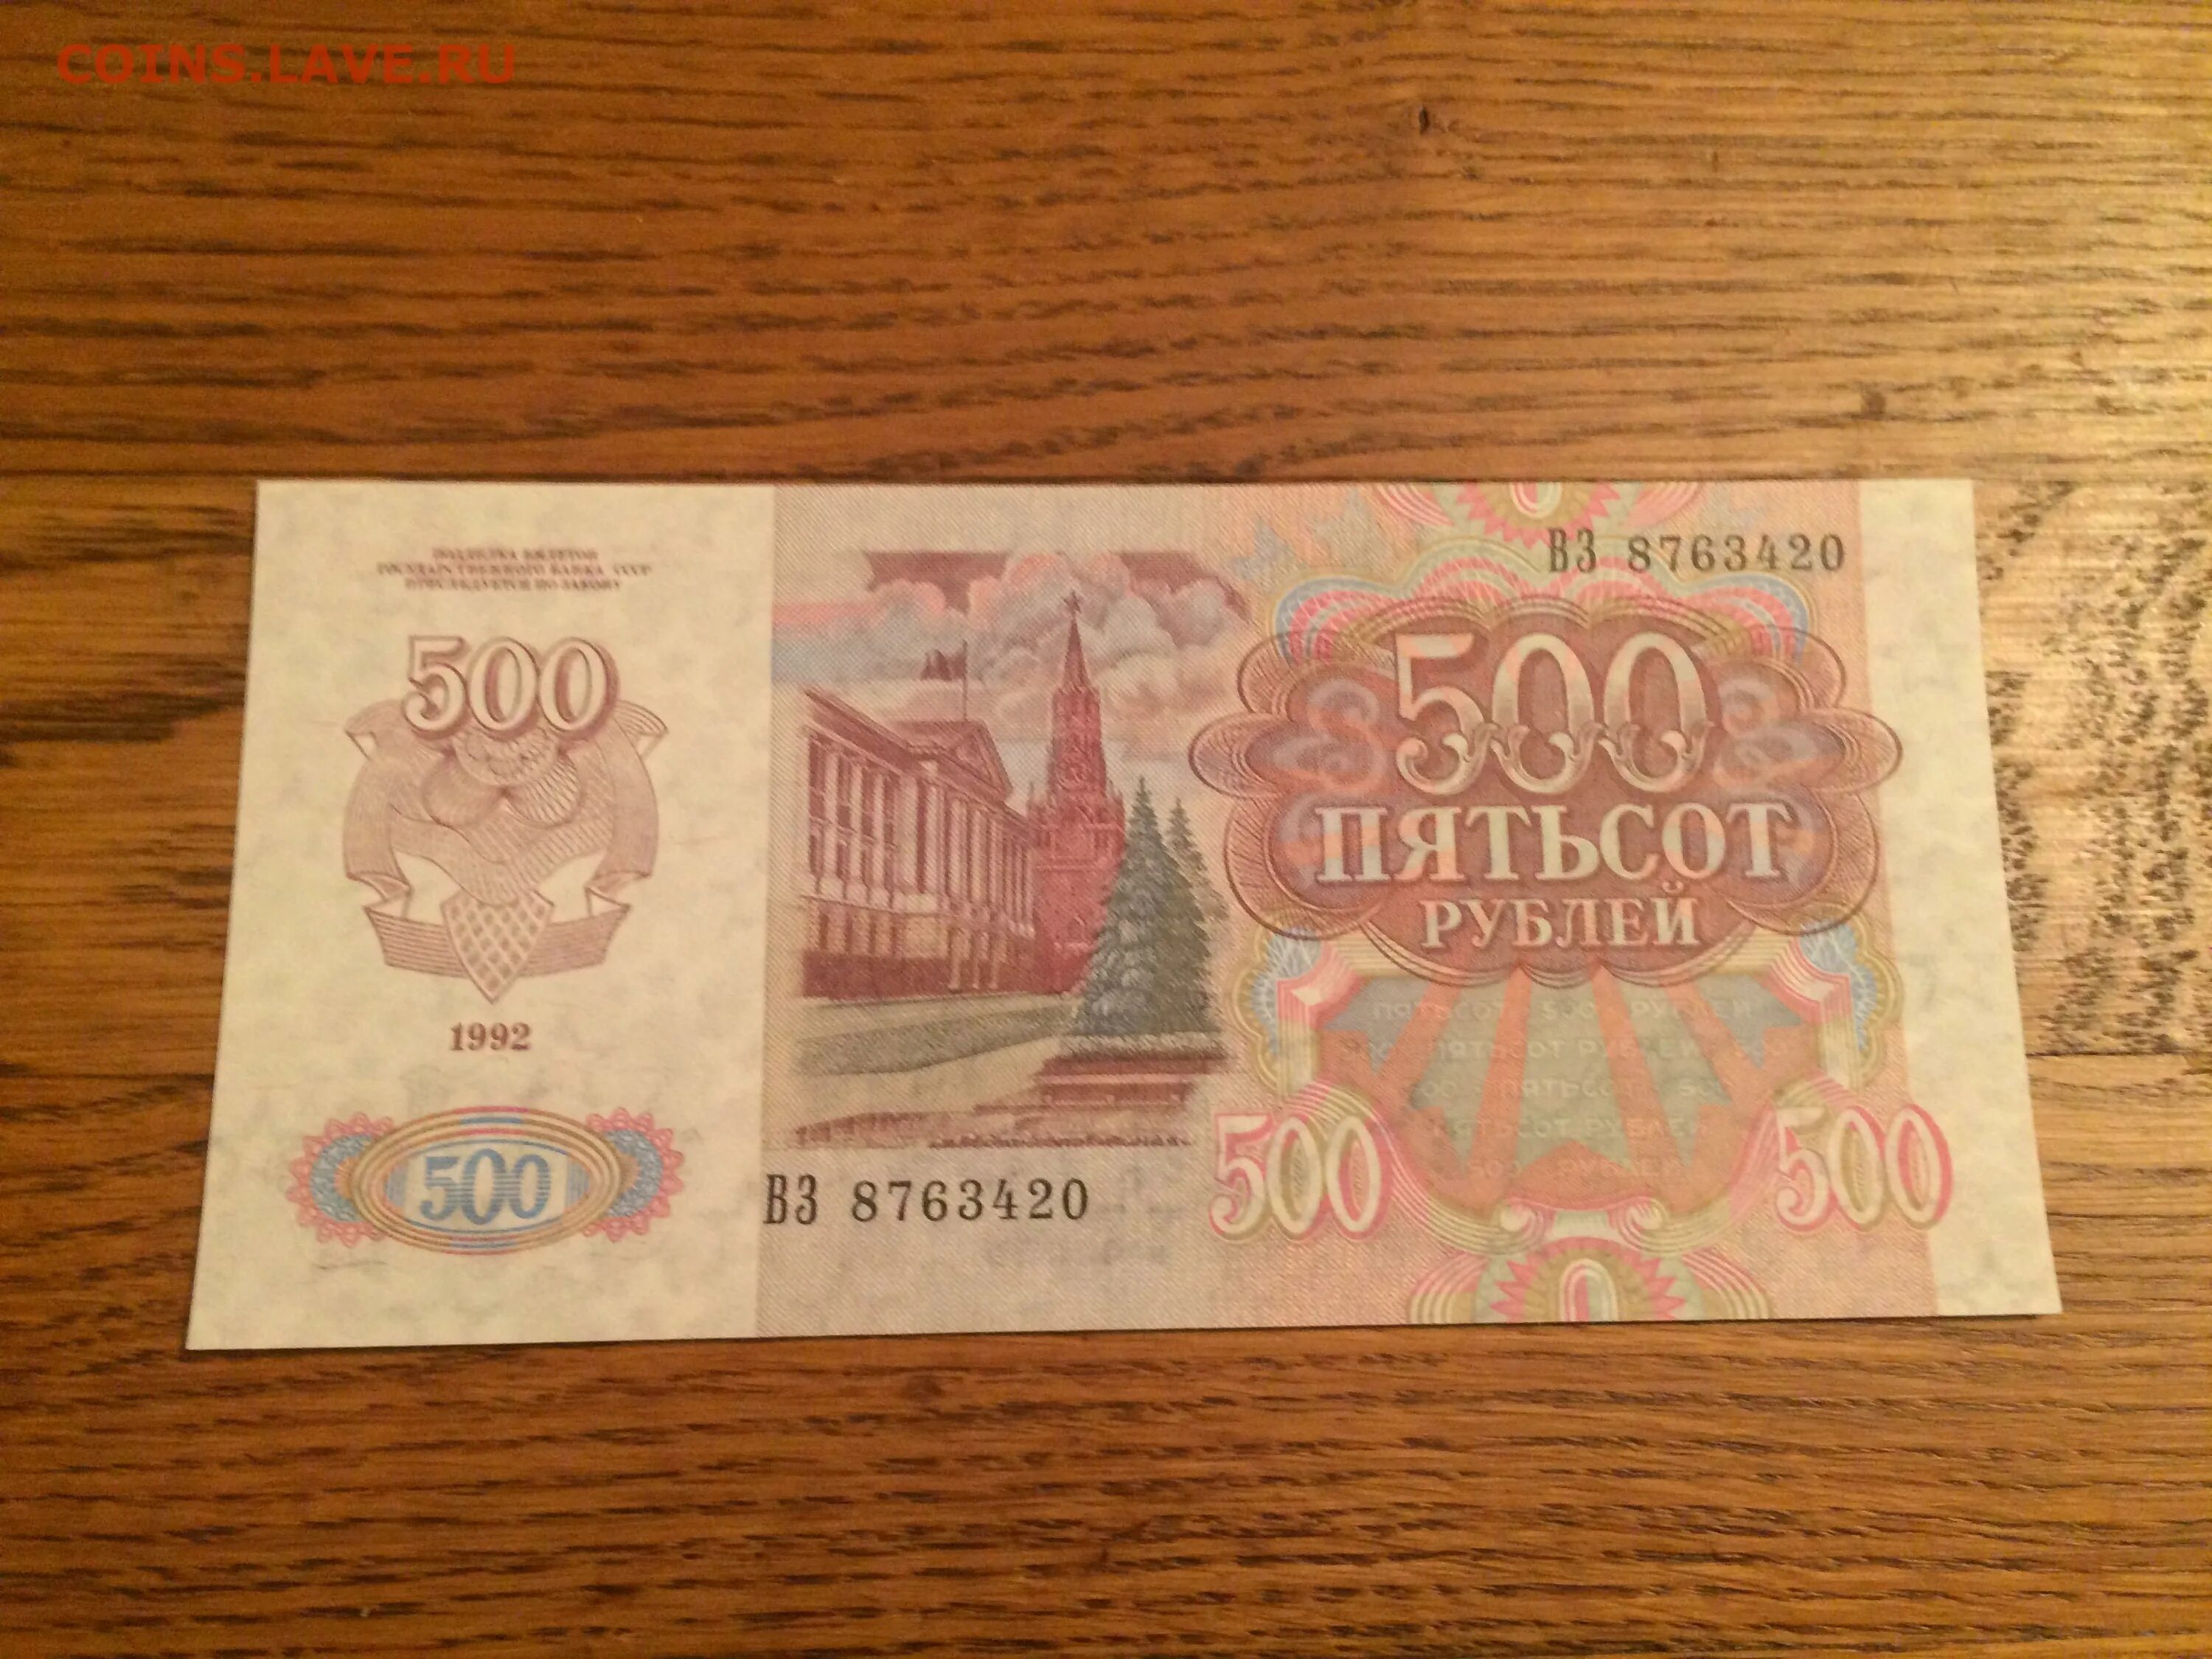 5000 рублей бумажные